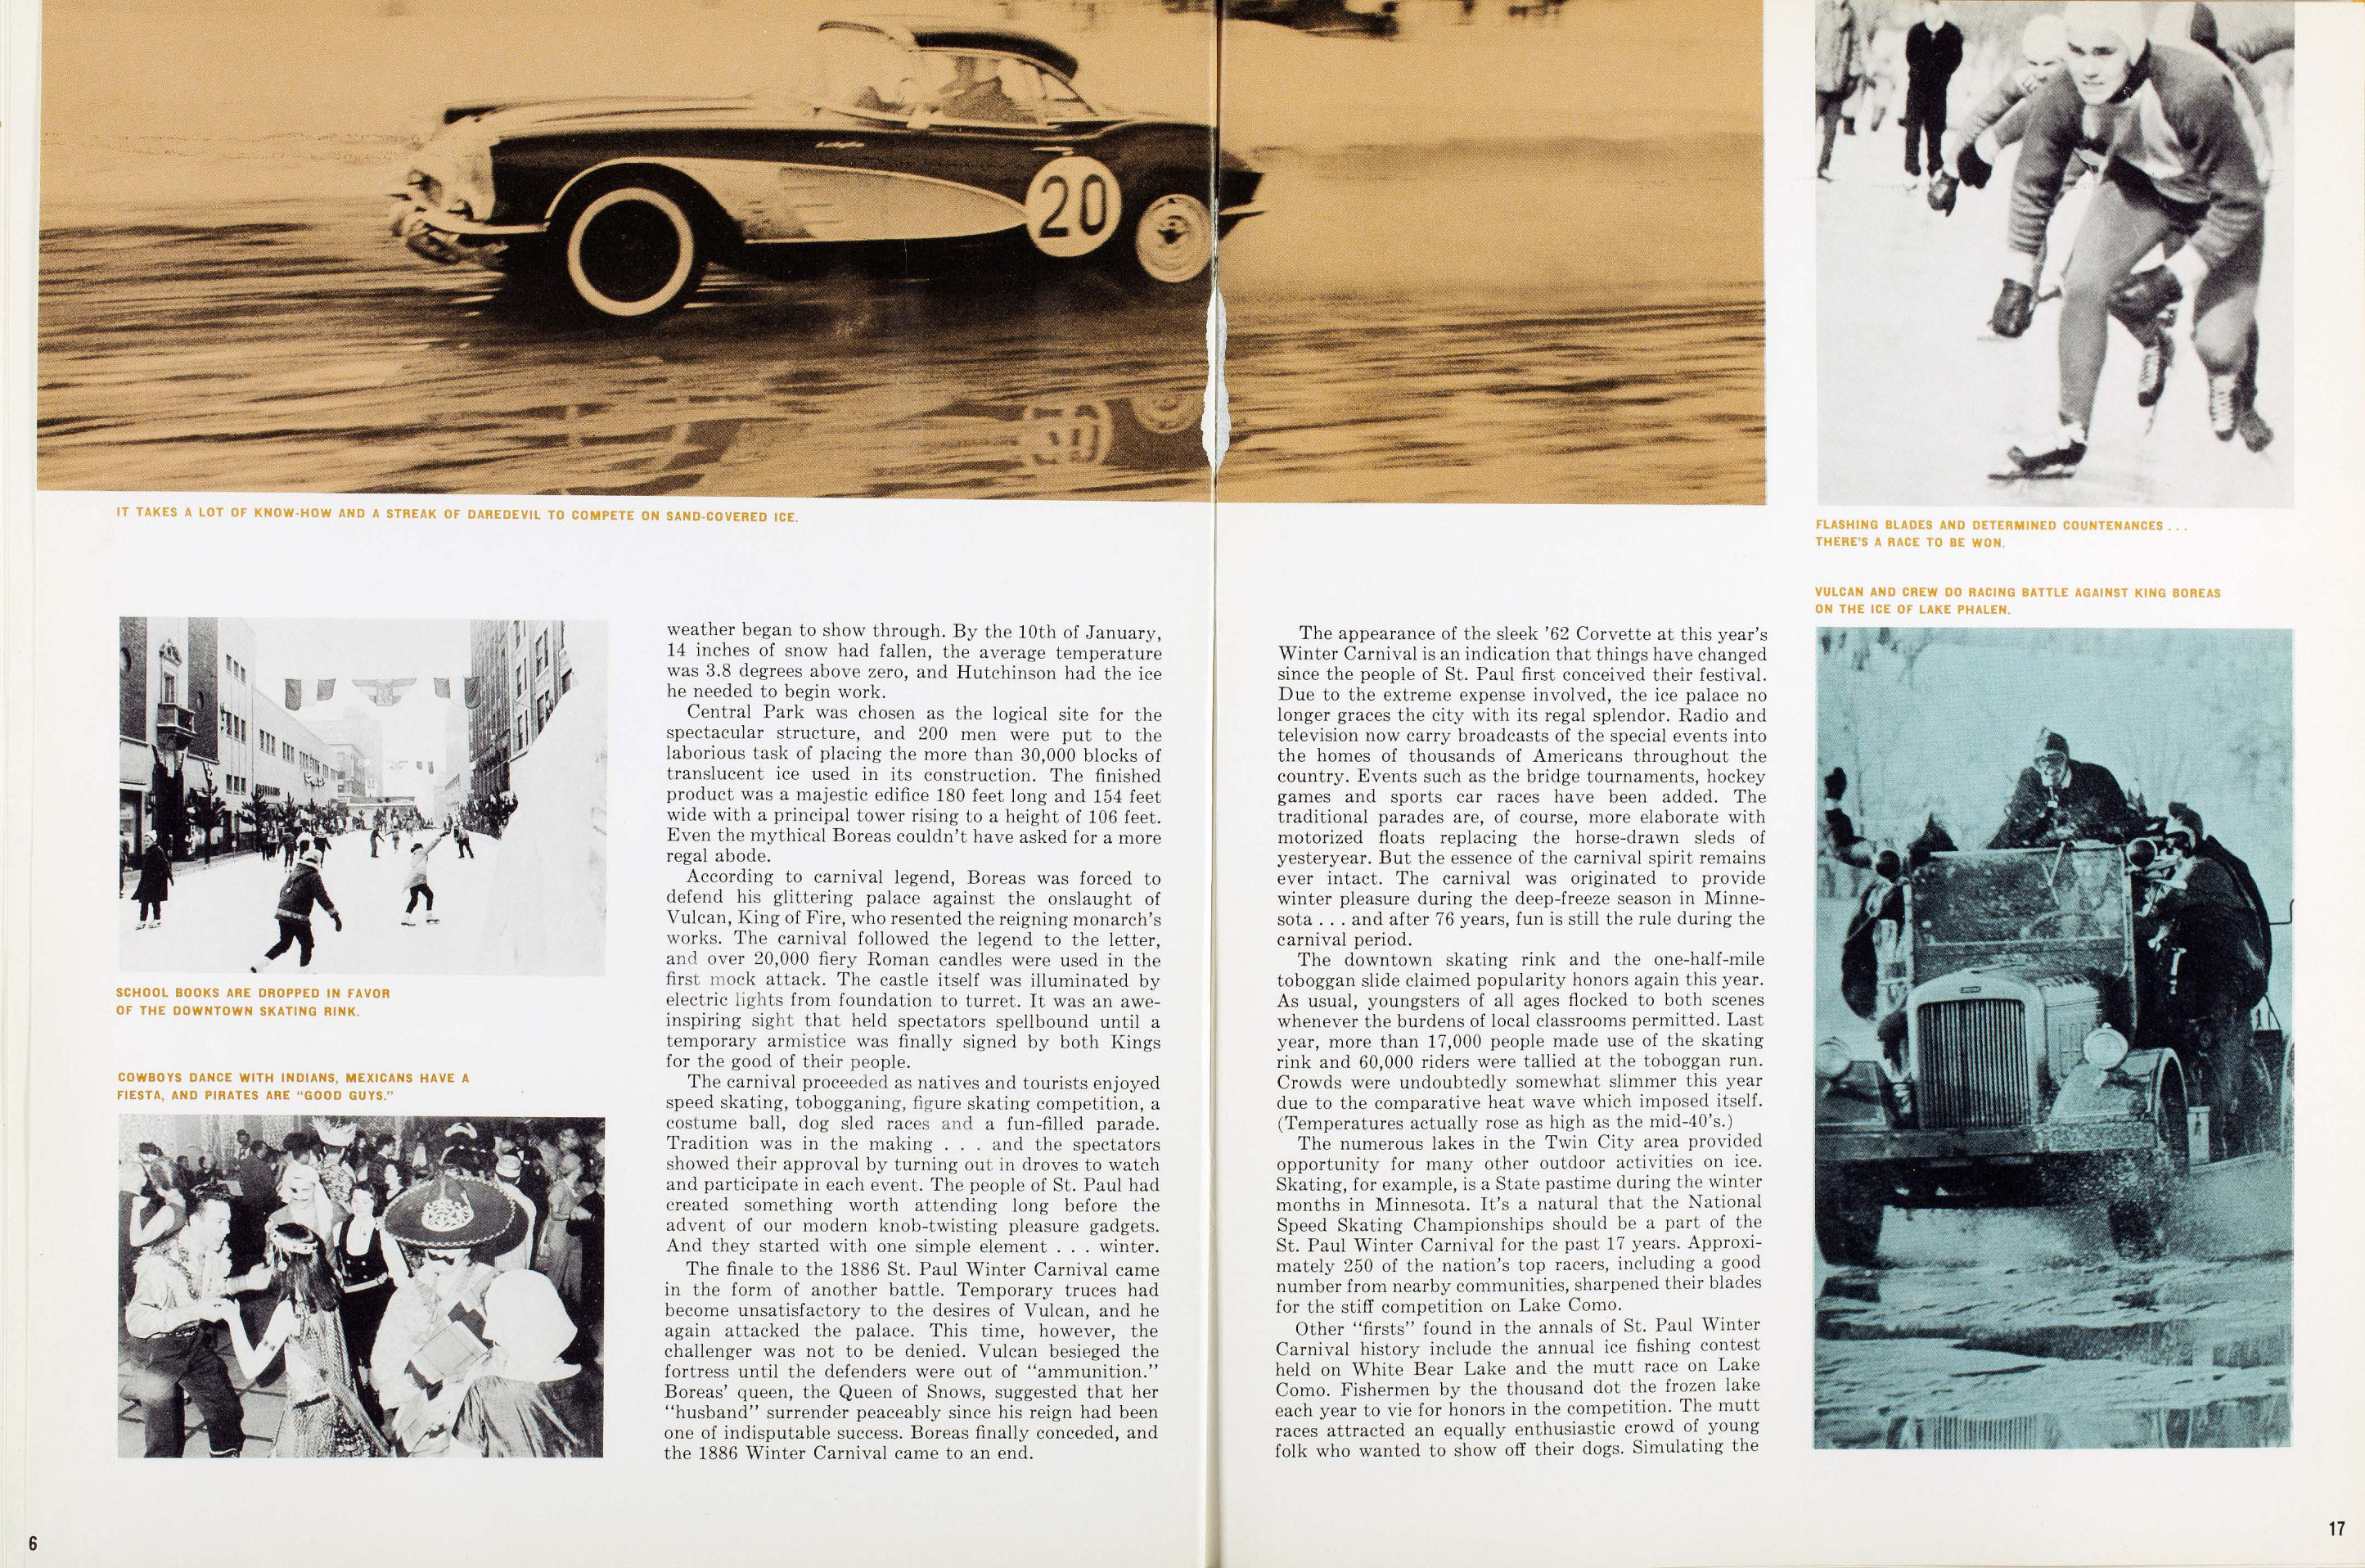 1962_Corvette_News_V5-3-16-17